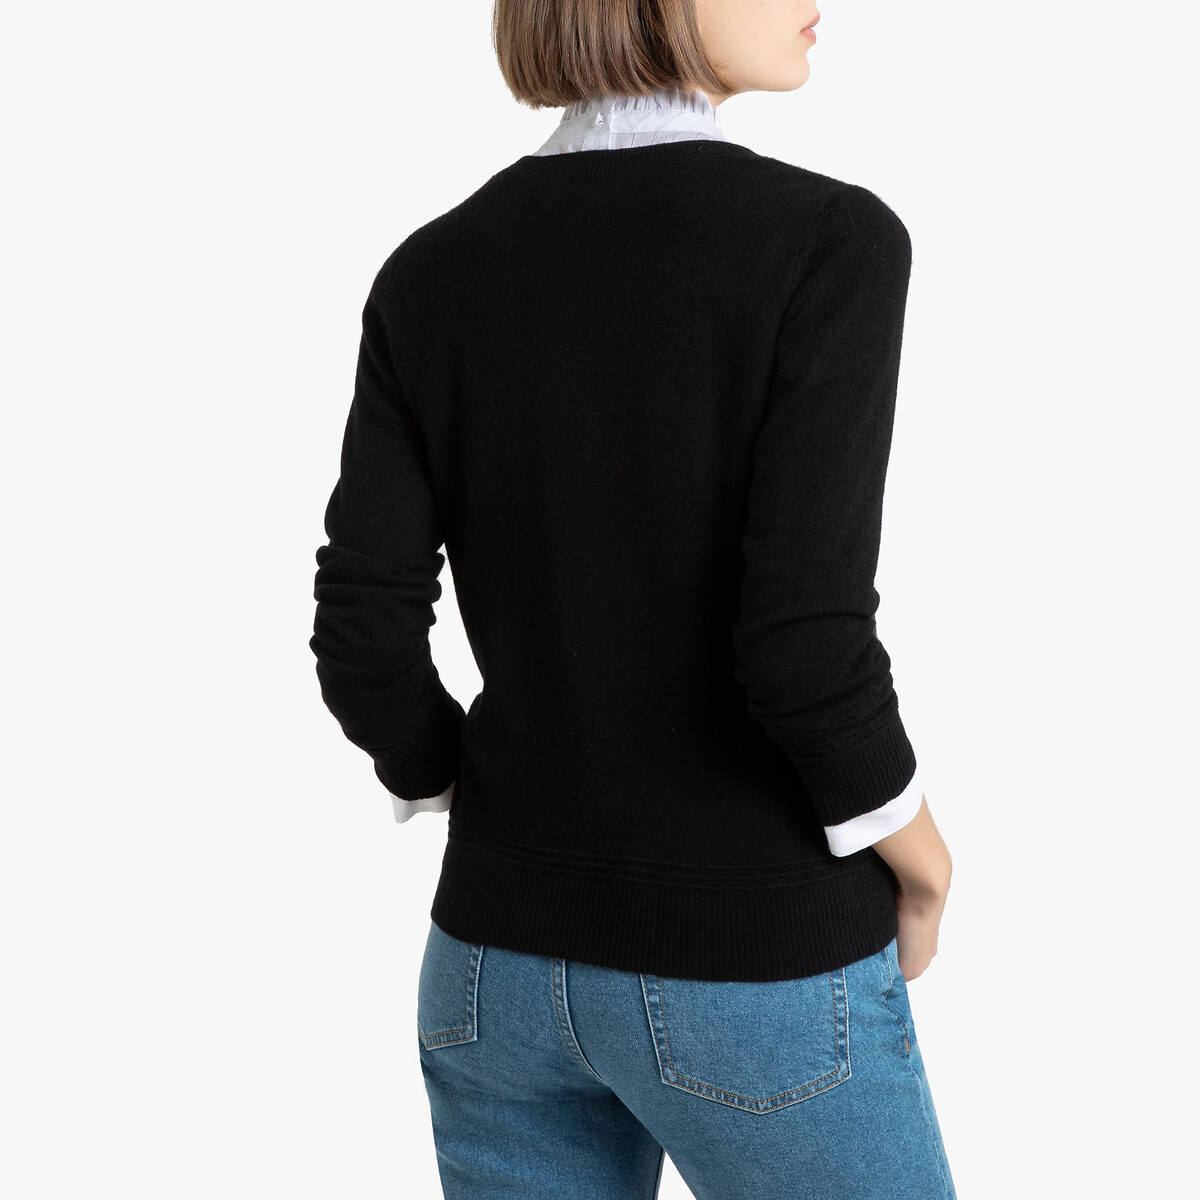 Пуловер La Redoute С круглым вырезом из кашемира S черный, размер S - фото 4